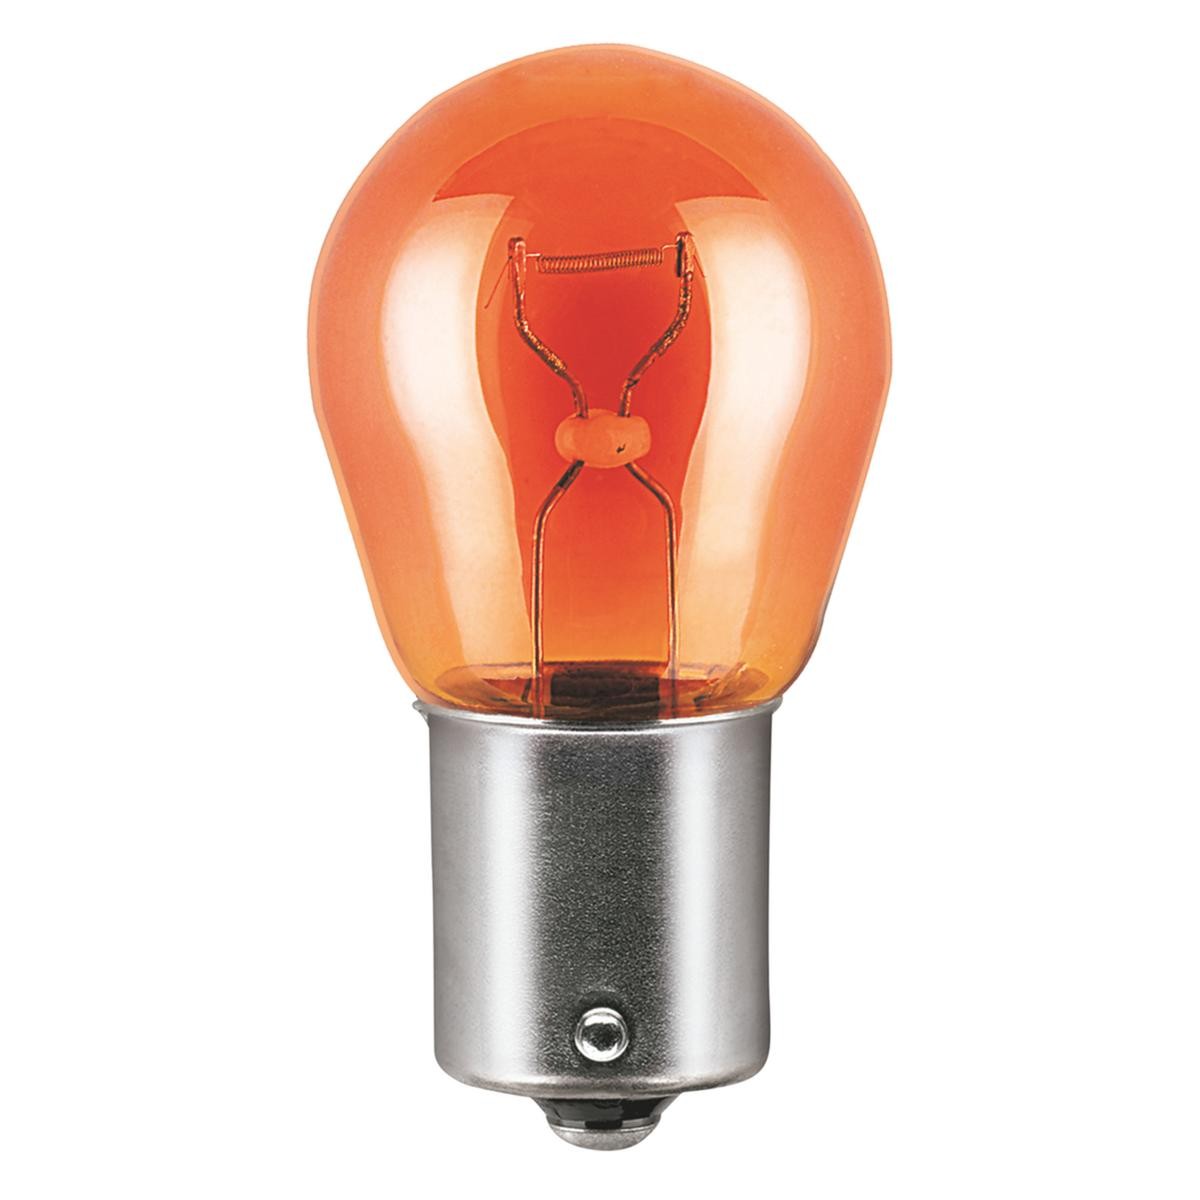 Ampoule orange pour clignotant 12 volts 21w defender